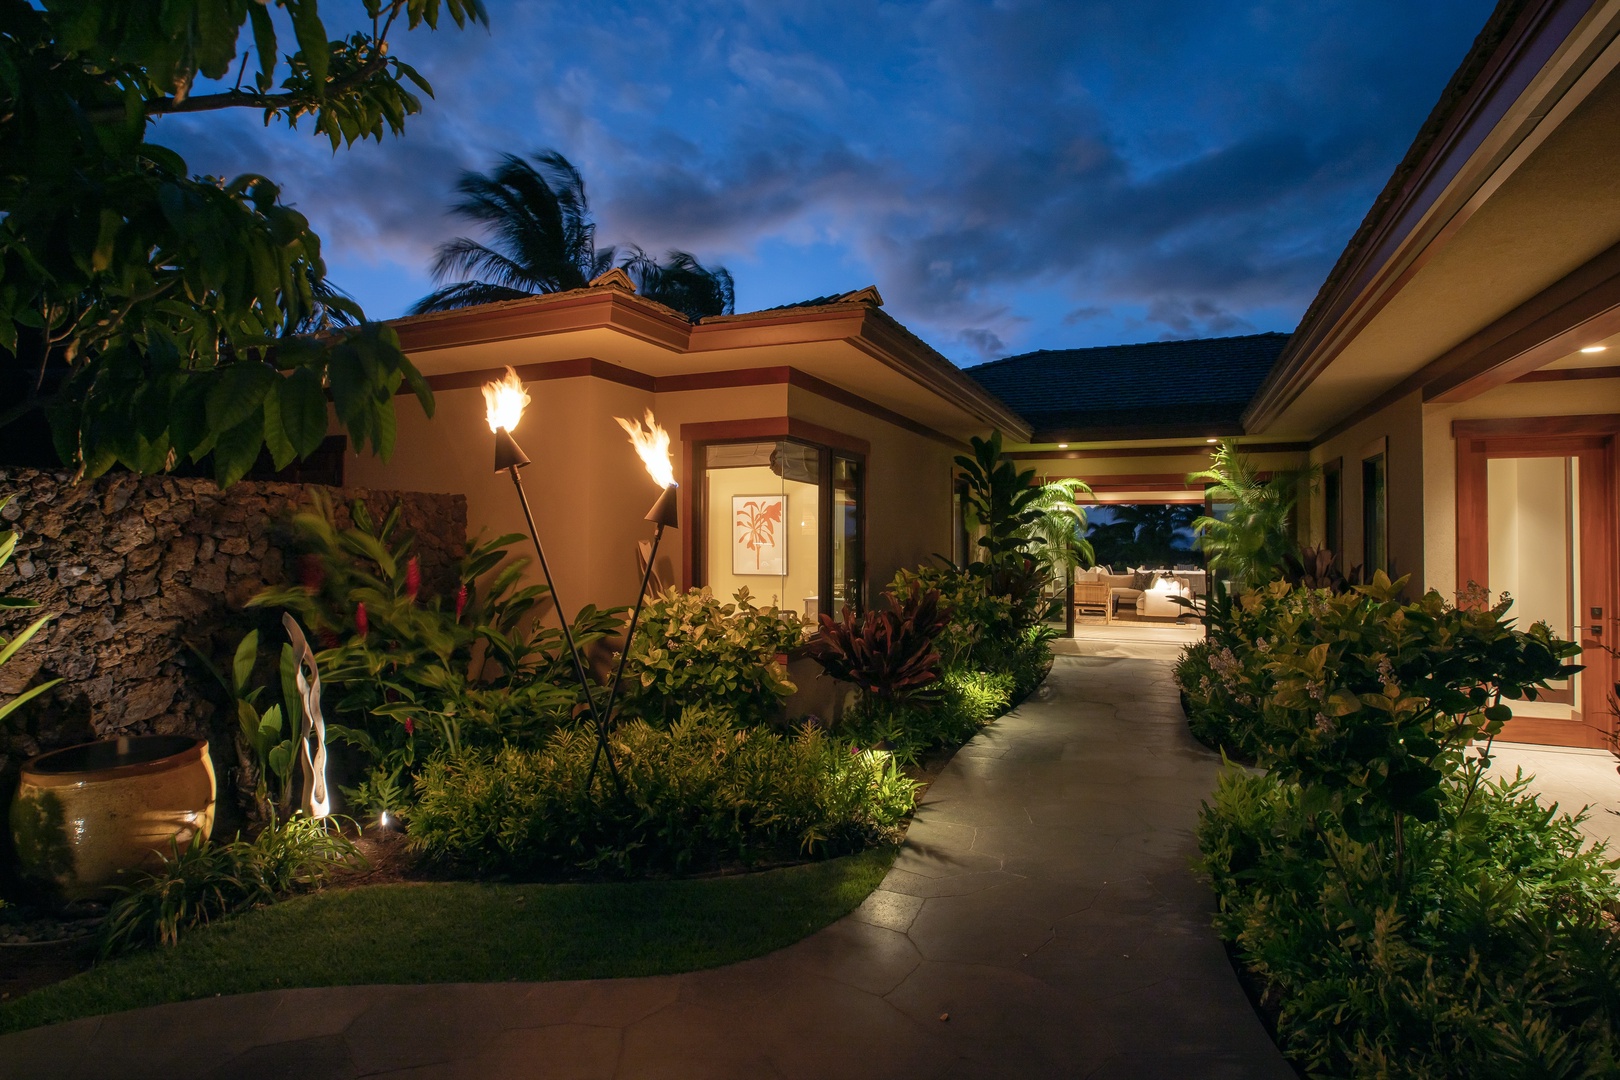 Kailua Kona Vacation Rentals, 4BD Kulanakauhale (3558) Estate Home at Four Seasons Resort at Hualalai - Front entryway at twilight with tiki torches lit.